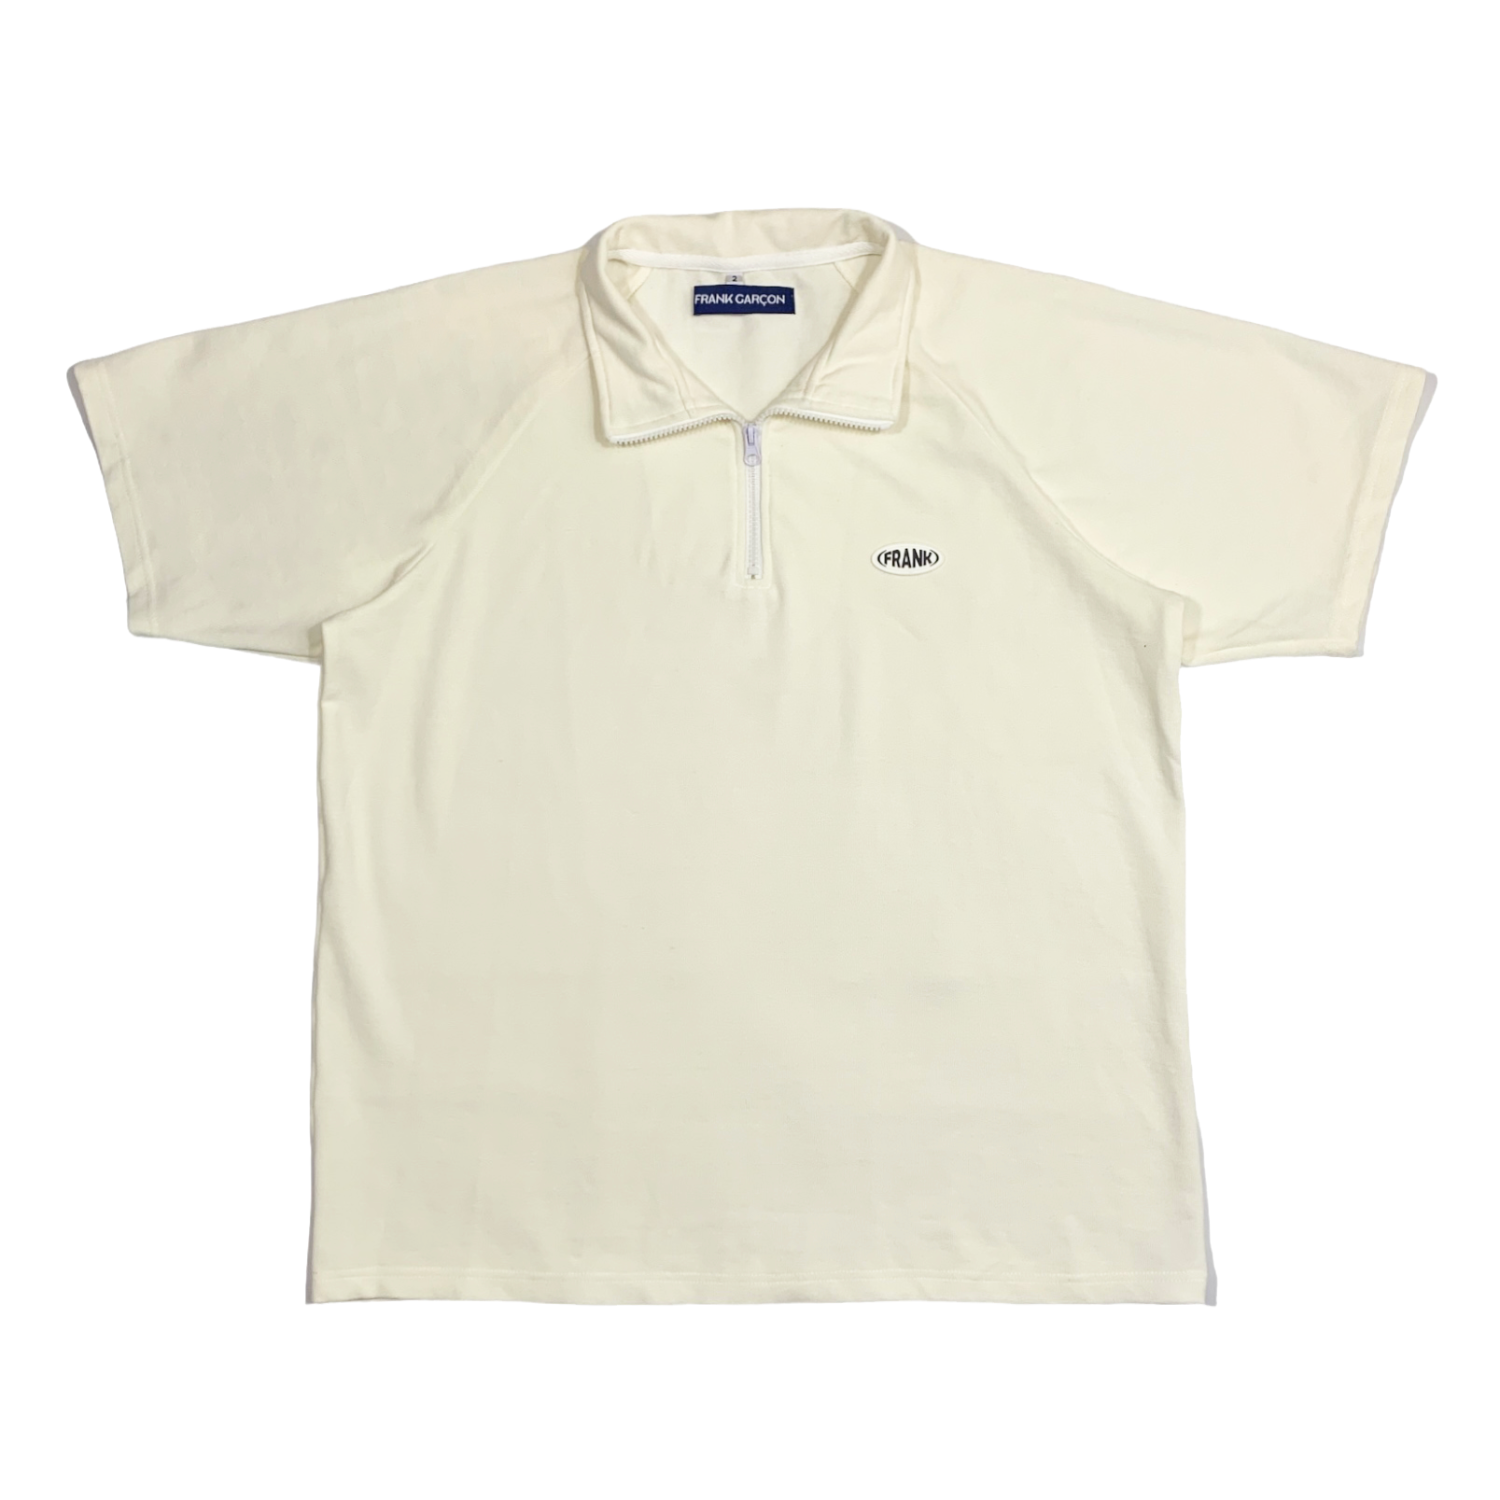 Zeno Polo Shirt (Cream)